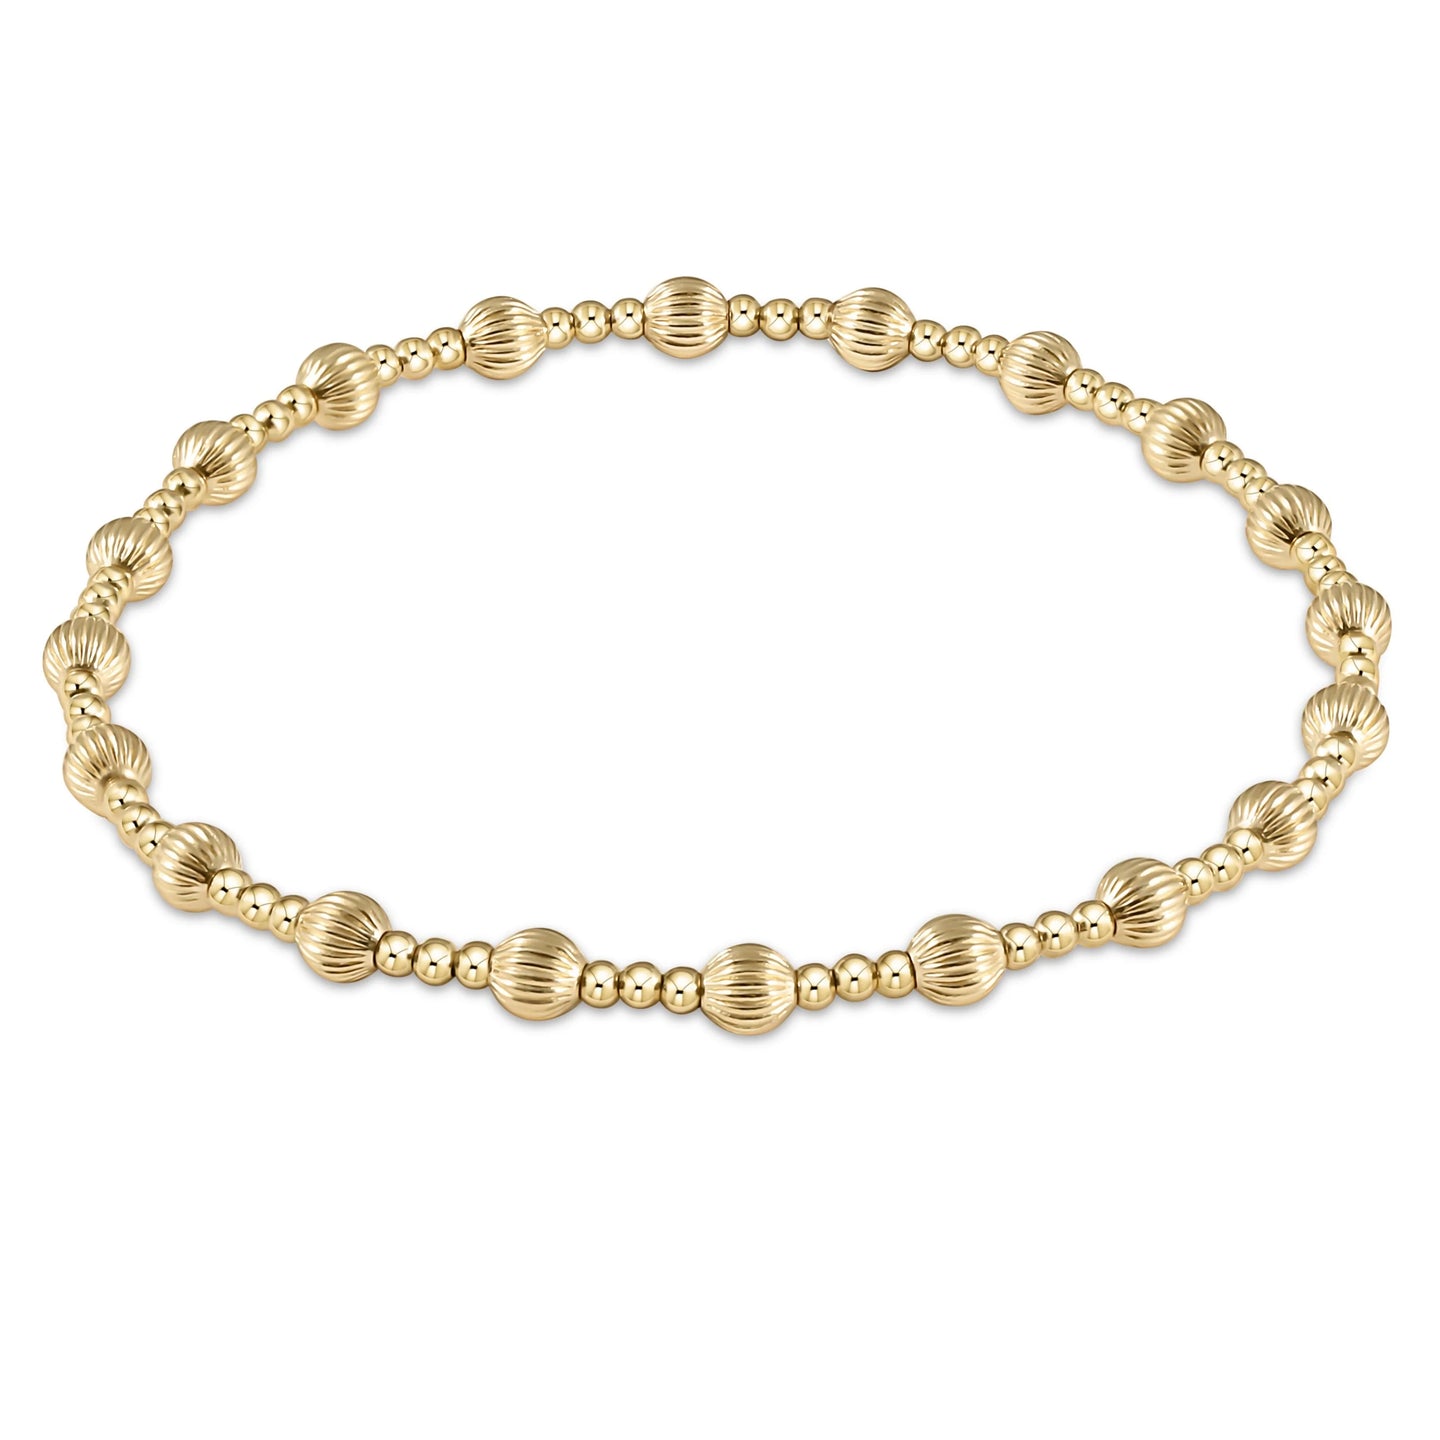 enewton Dignity Sincerity Pattern 4mm Bead Bracelet - Gold